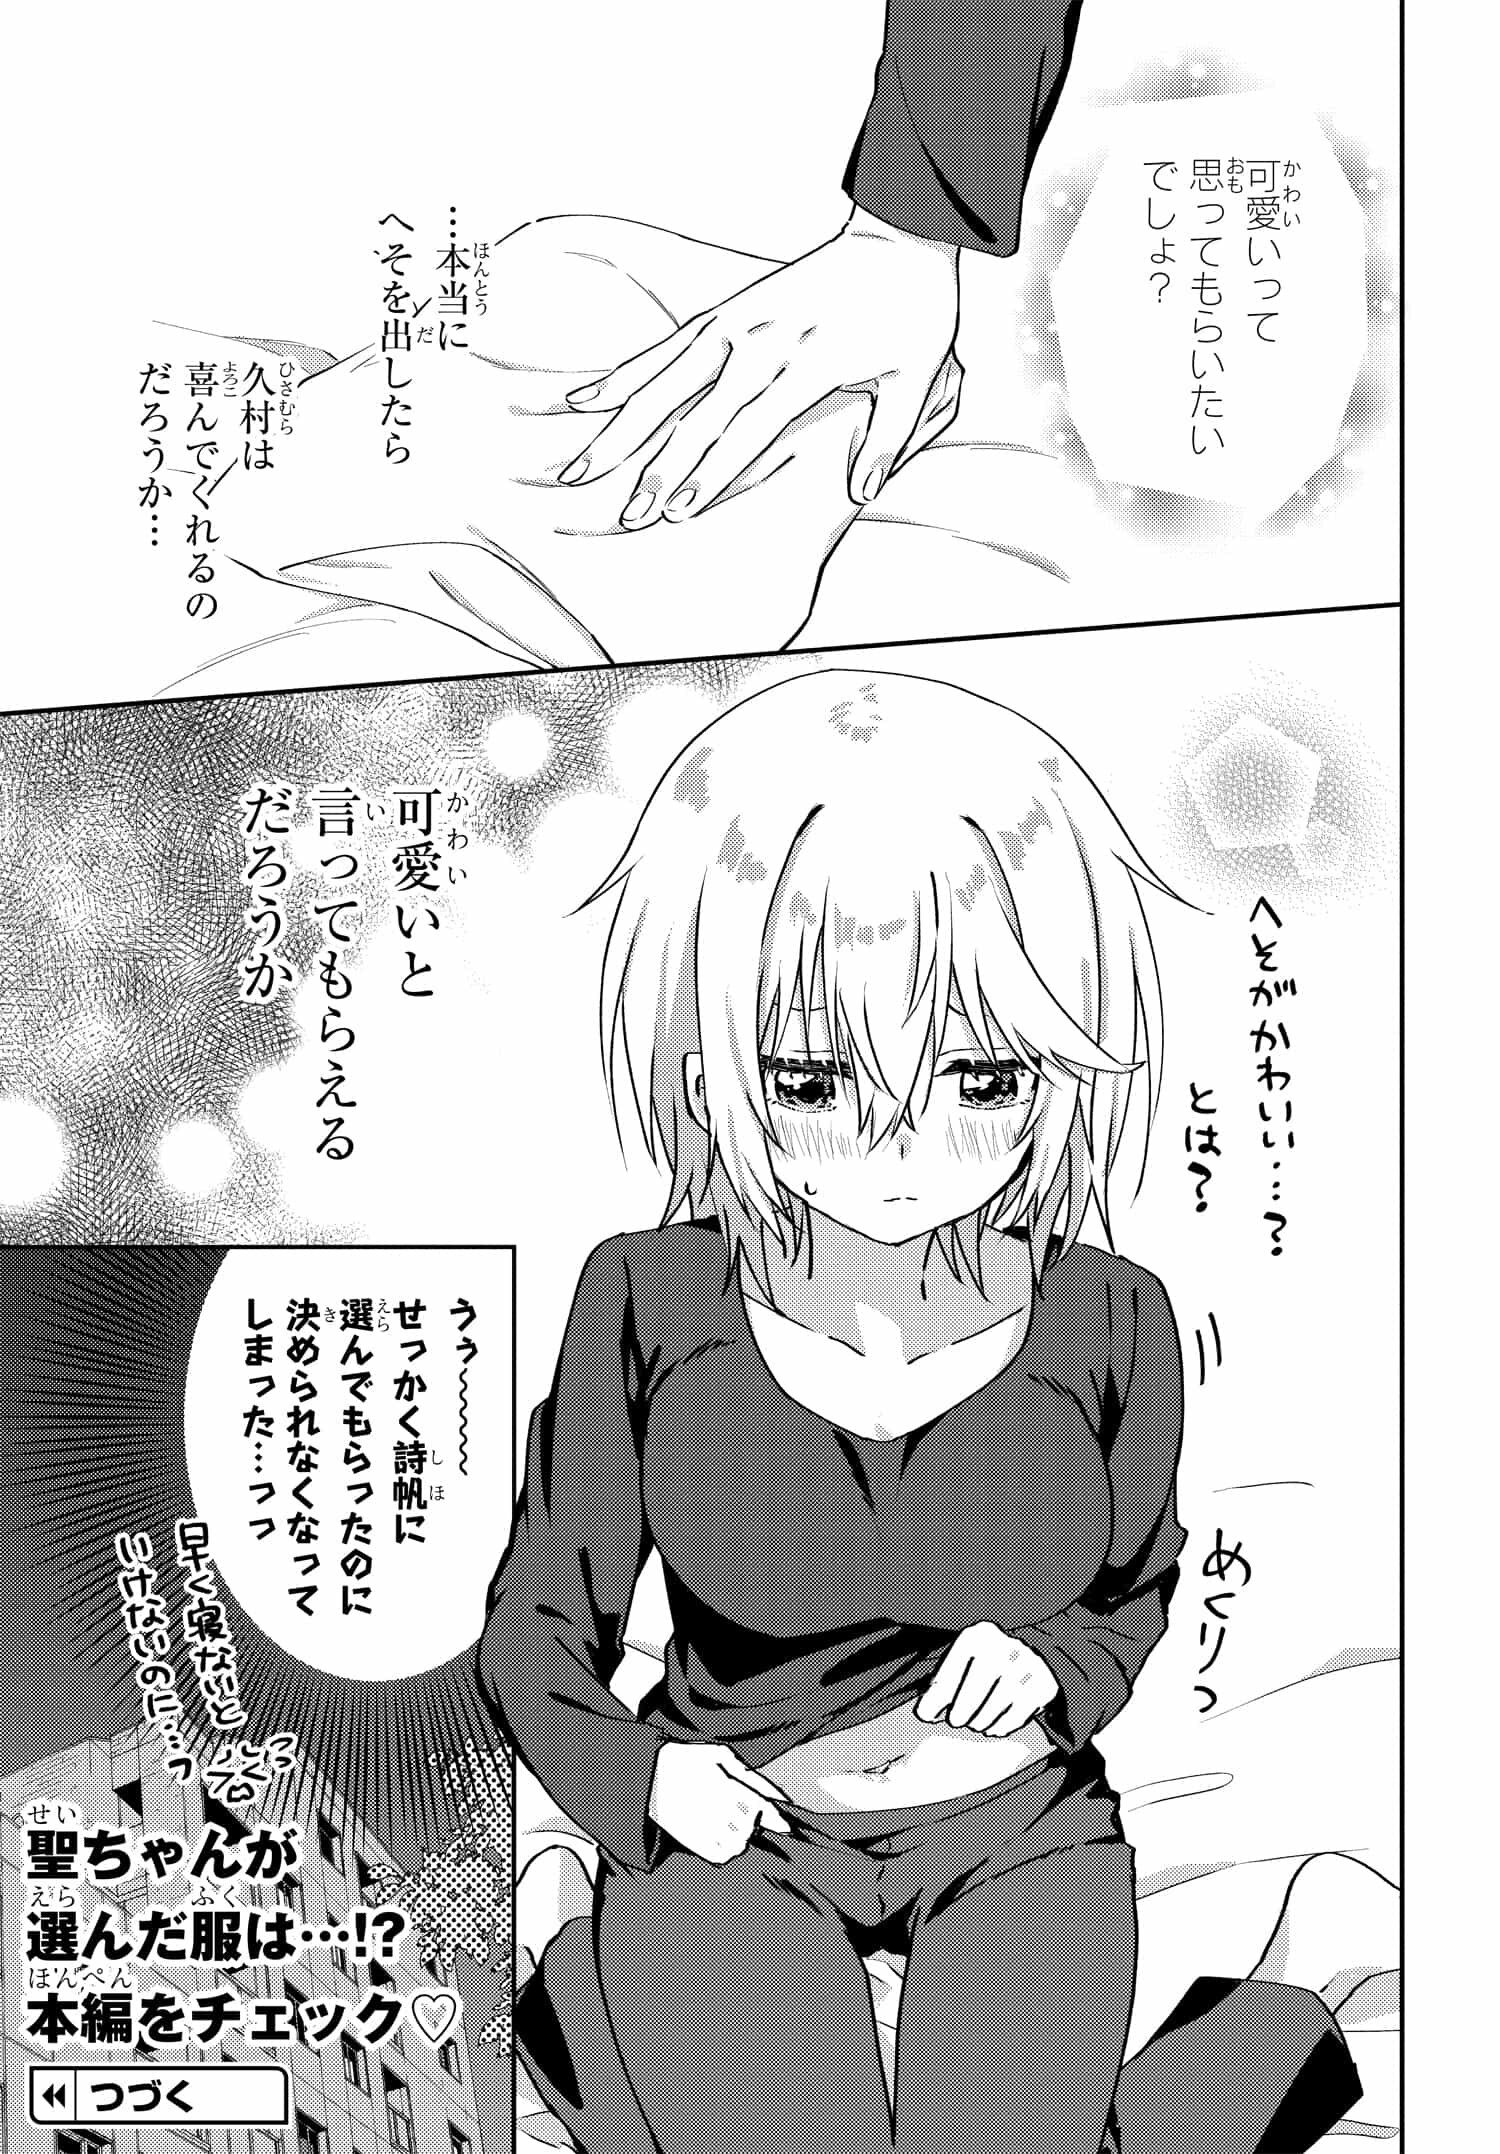 Romcom Manga ni Haitte Shimatta no de, Oshi no Make Heroine wo Zenryoku de Shiawase ni suru - Chapter 6.3 - Page 7